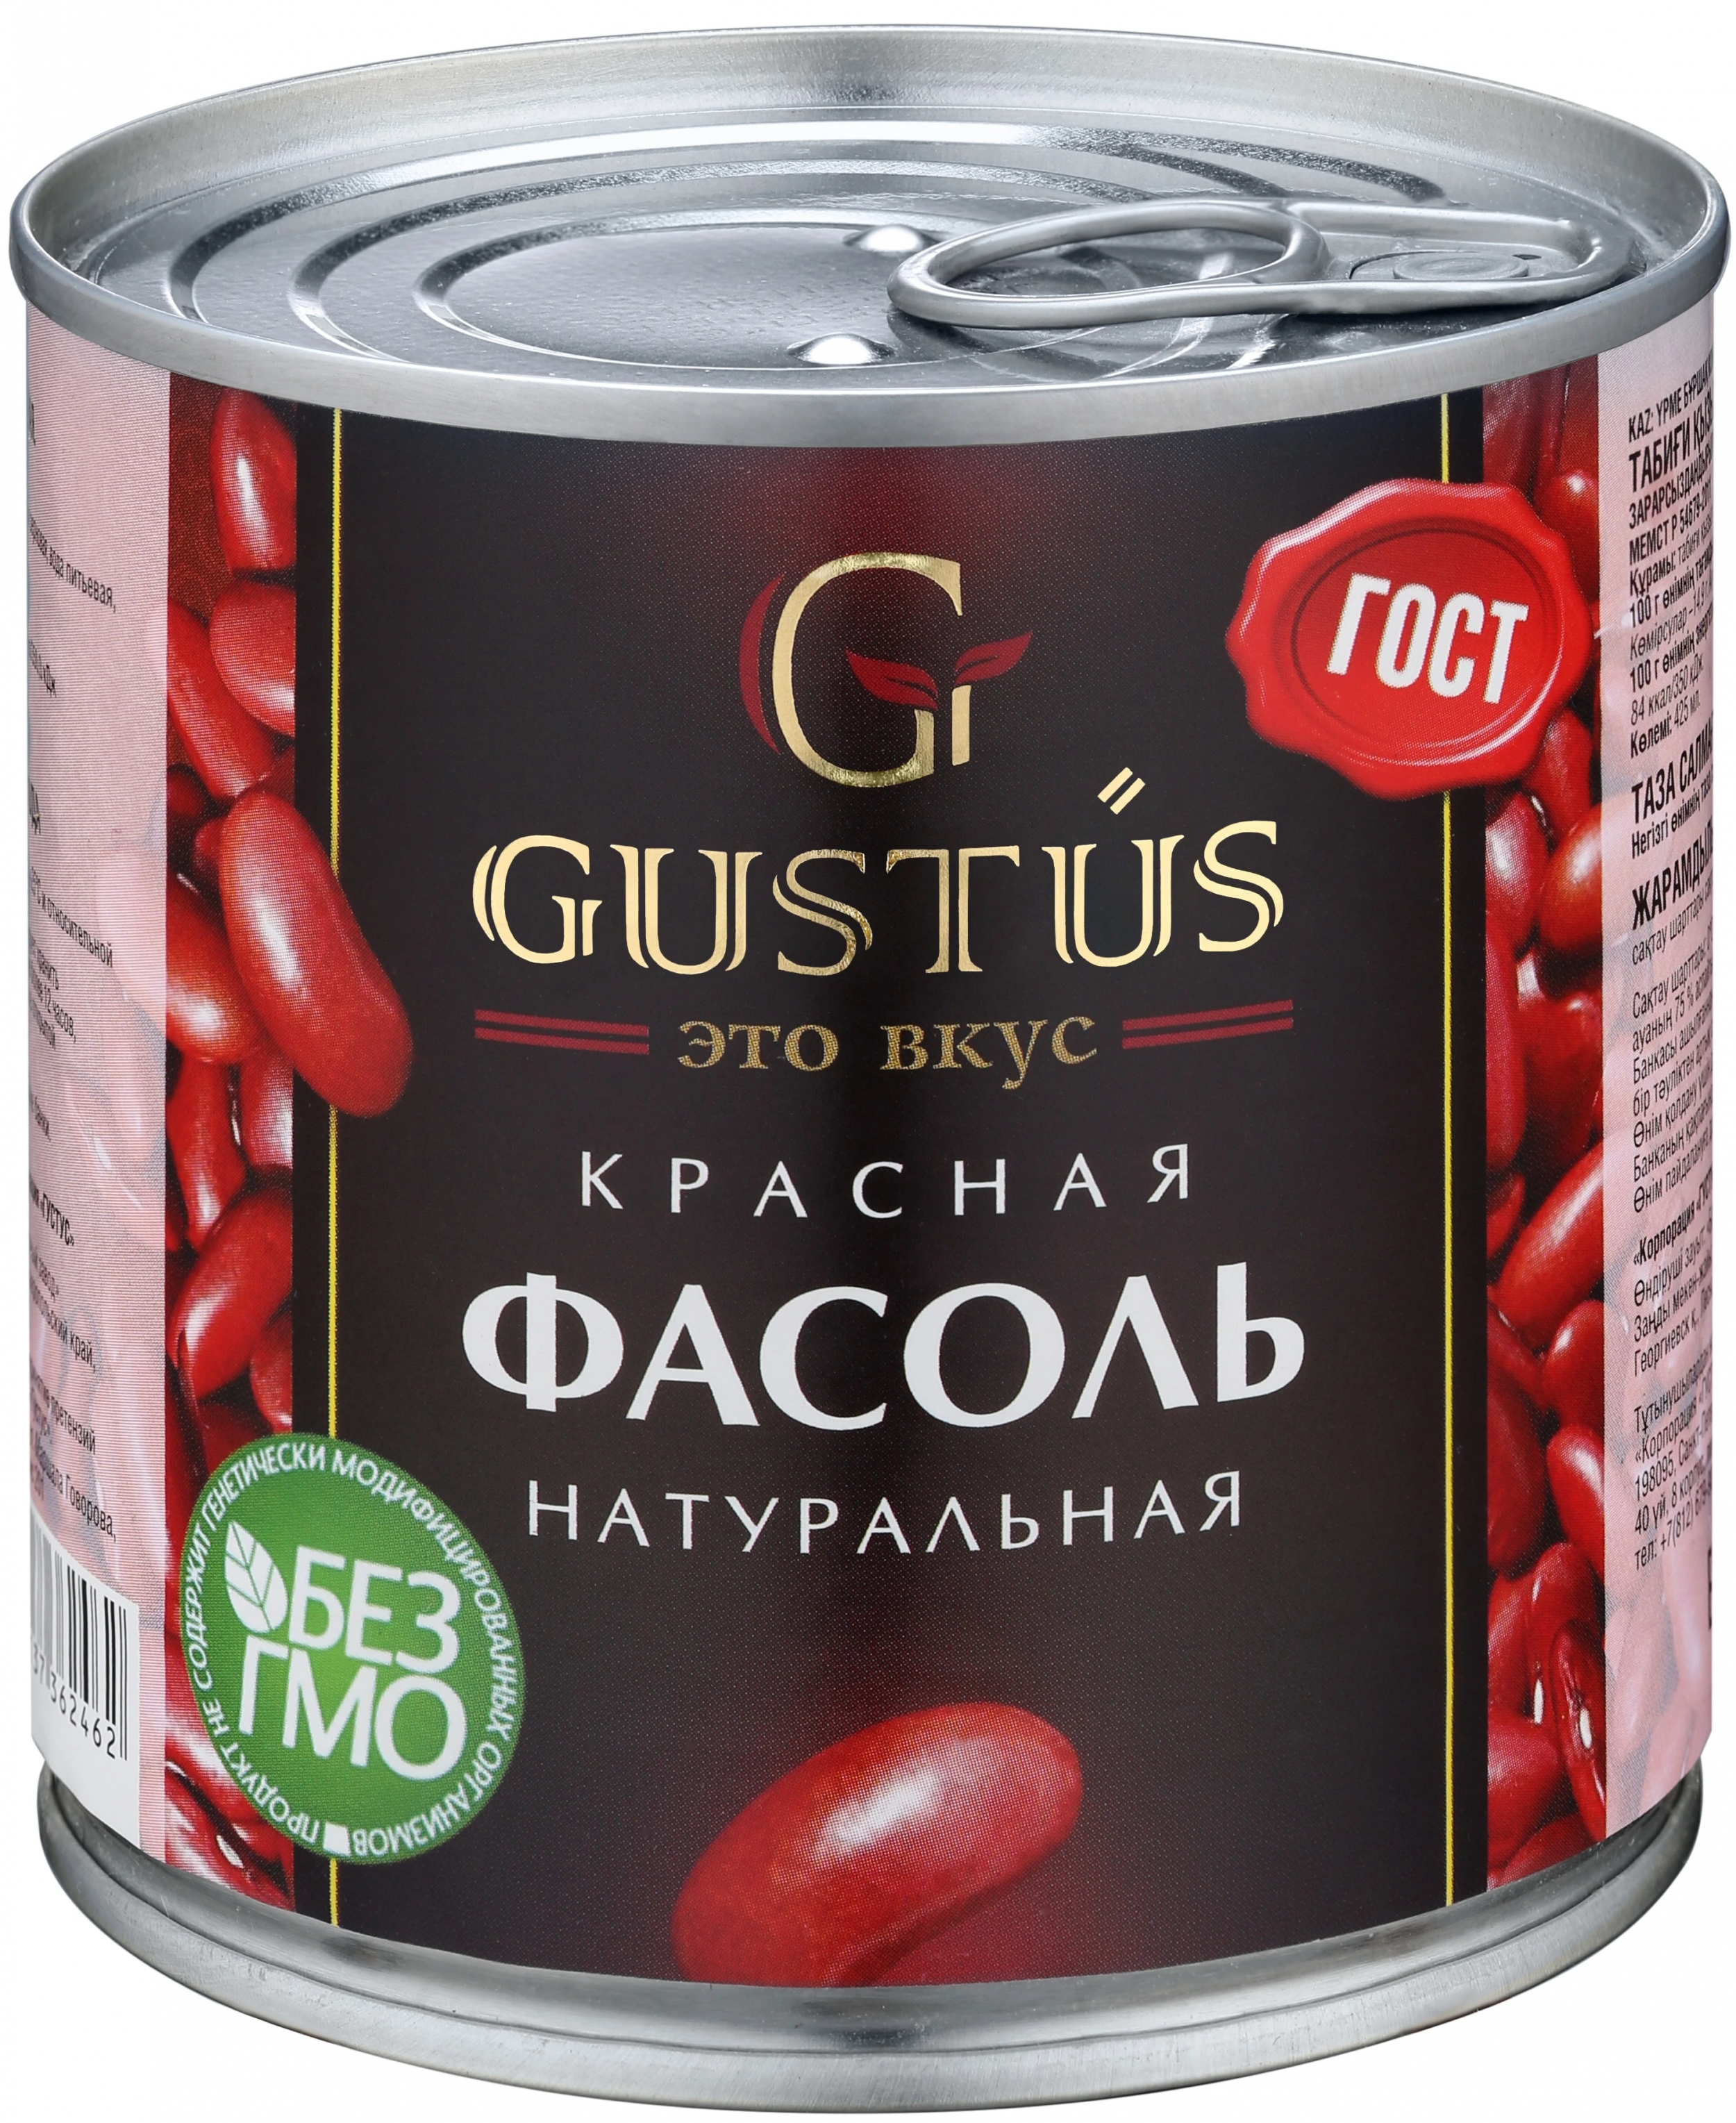 Фасоль красная натуральная Густус  ж/б 400 гр.(ключ)